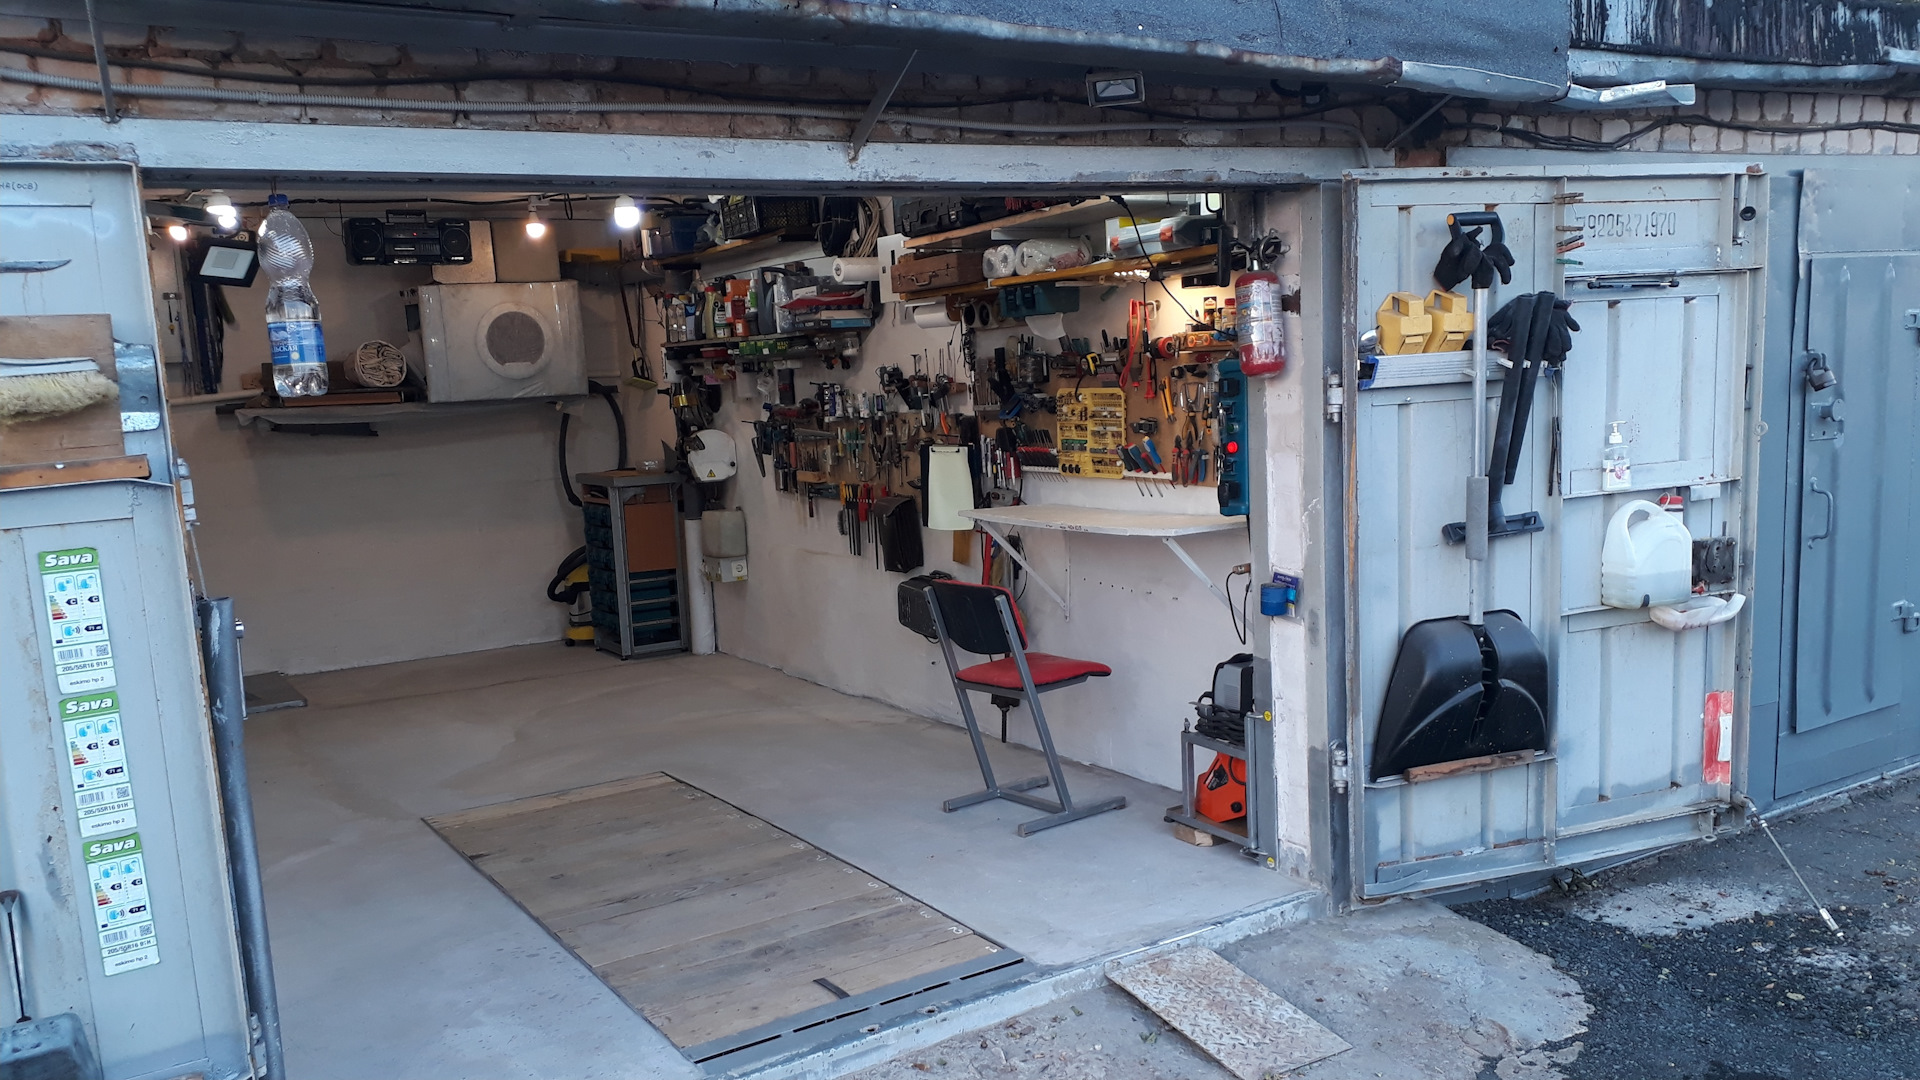 Обустройство гаража: приспособления и полезные самоделки своими руками